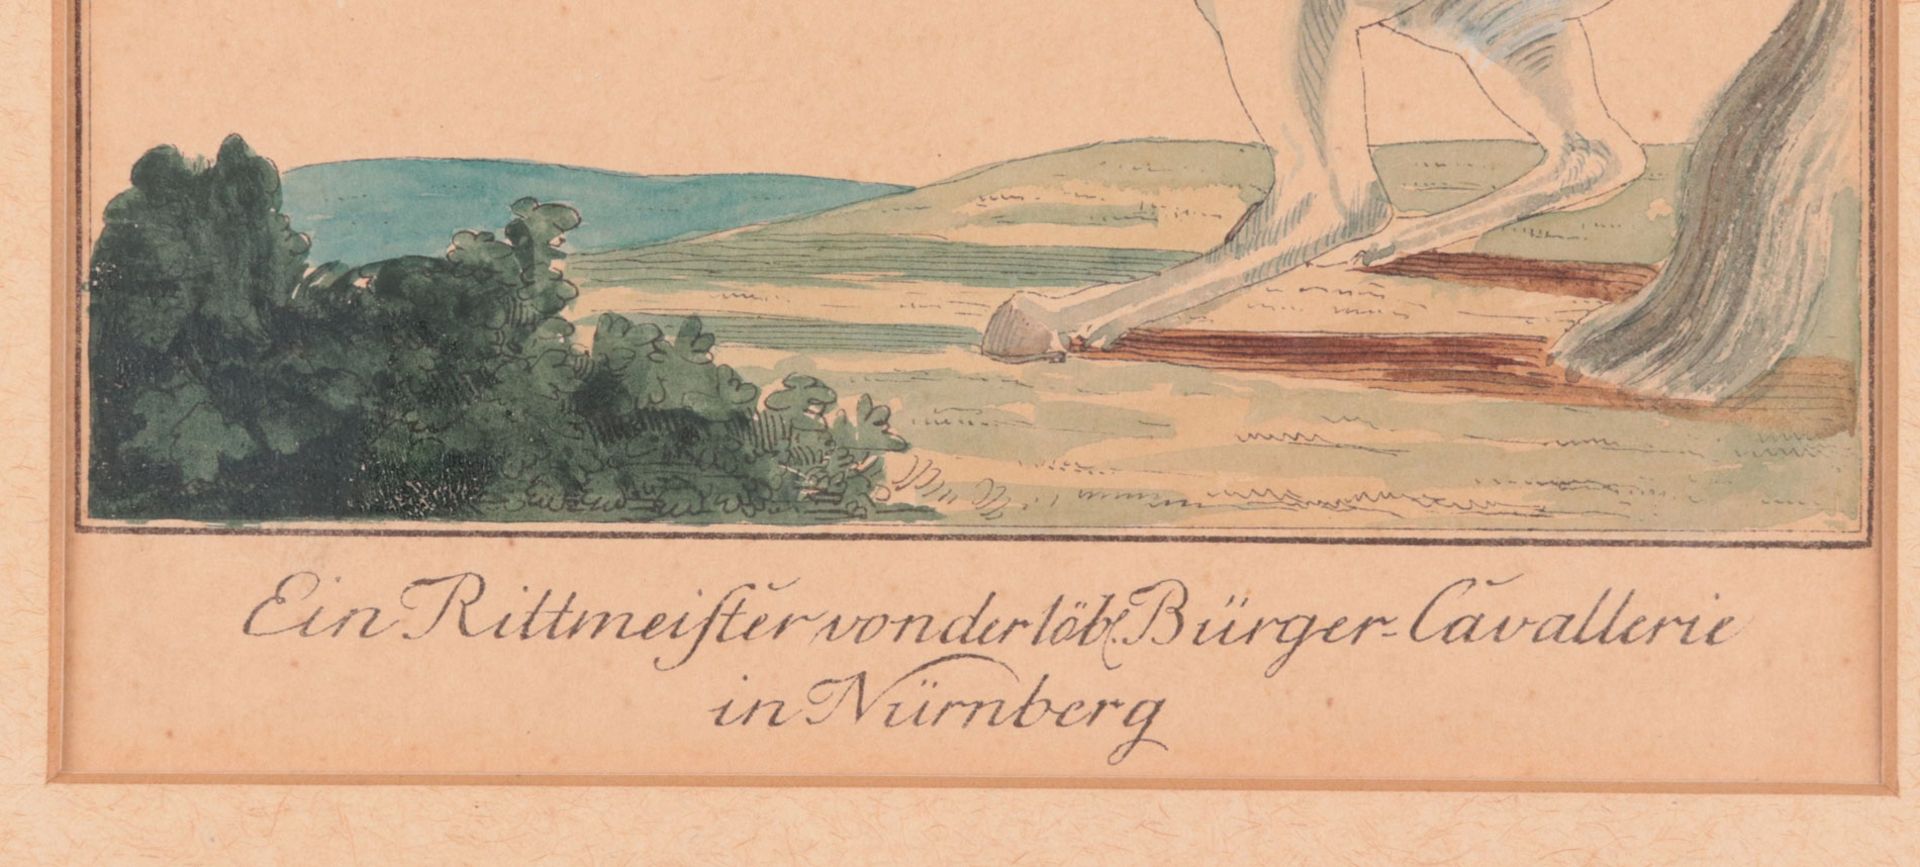 Nürnberg - Bürger-Cavallerie - Image 3 of 4